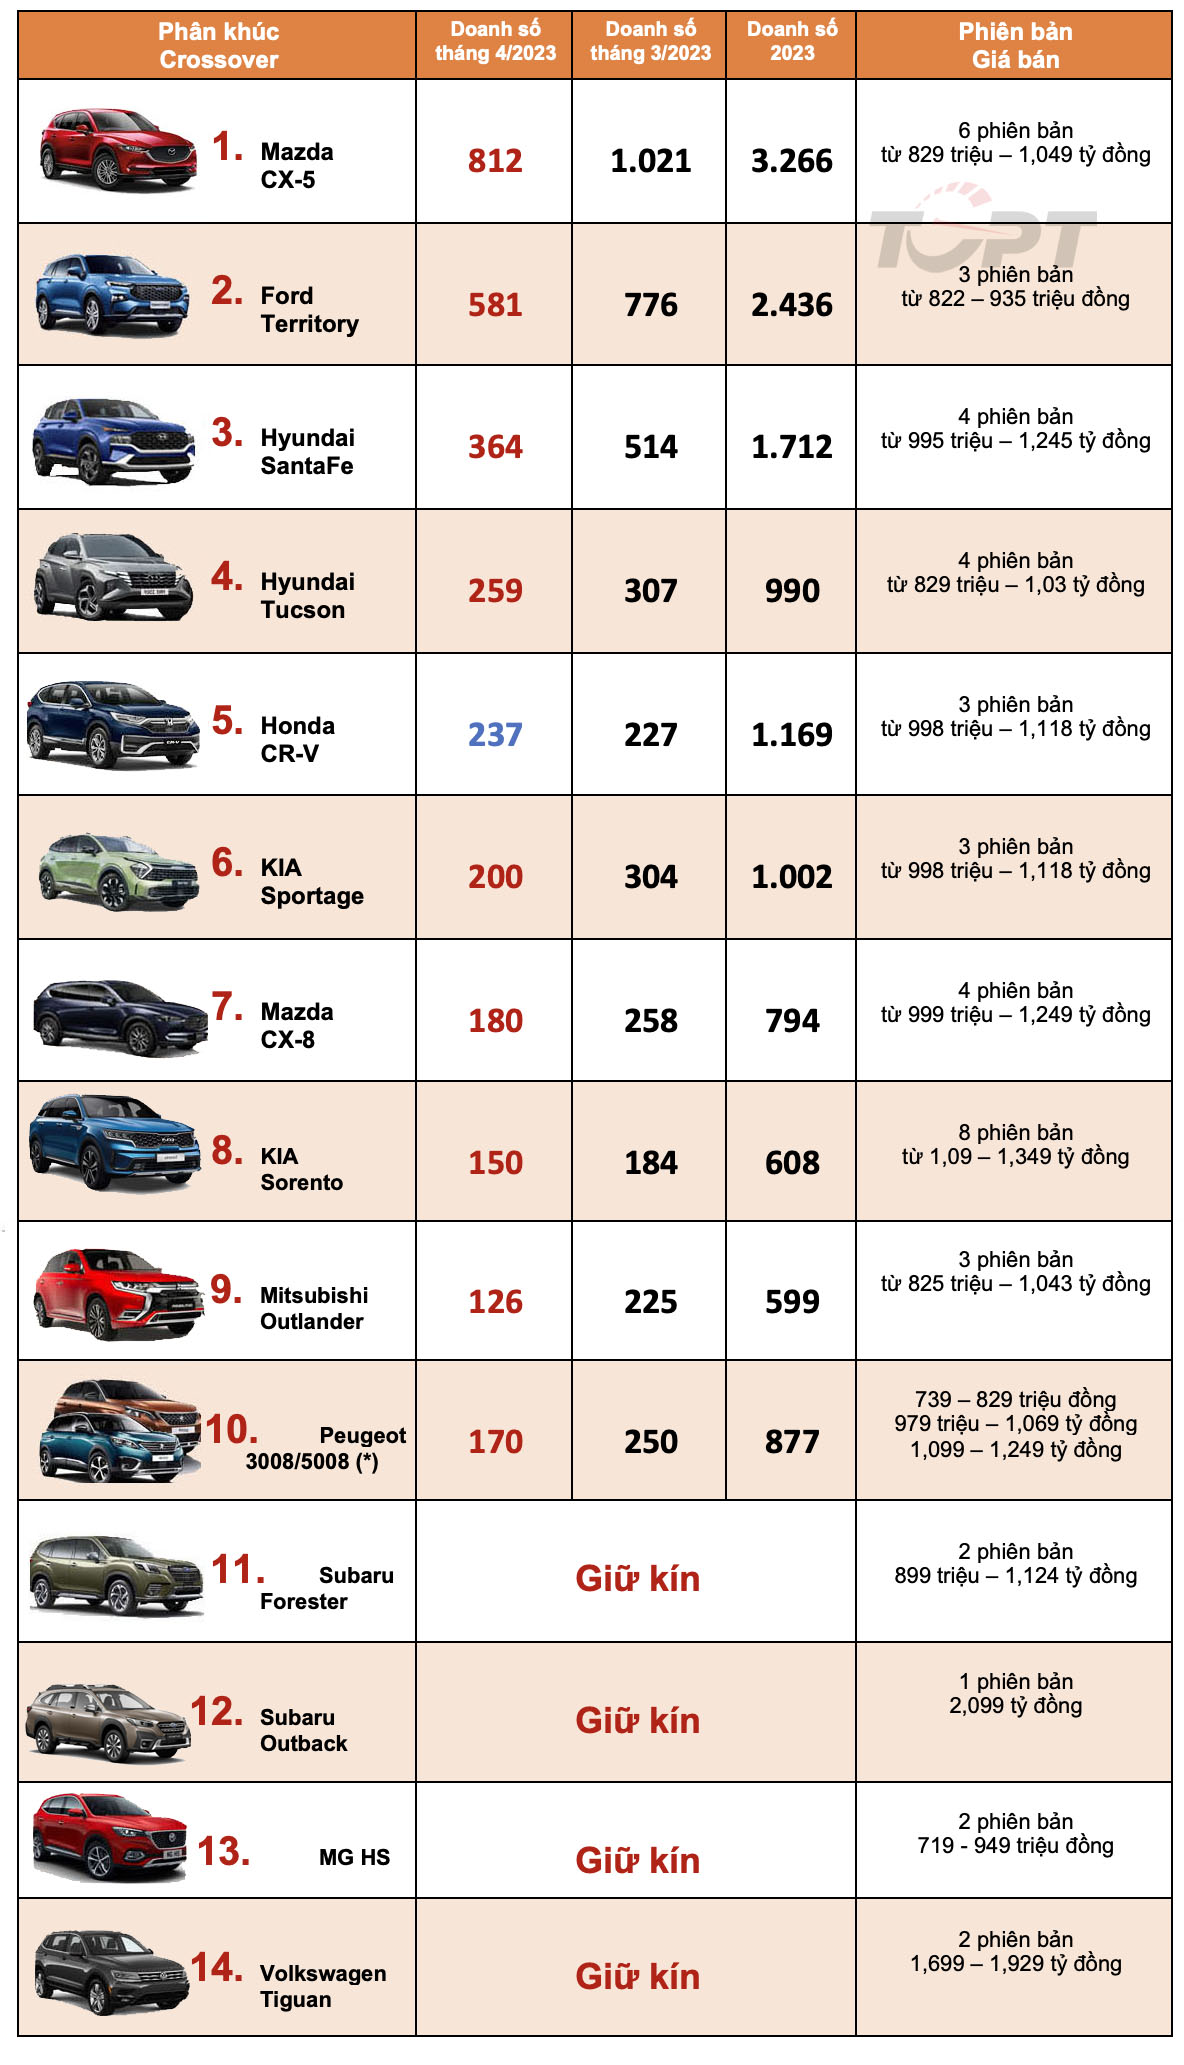 Câu chuyện người tiêu dùng thông minh: Hyundai Santa Fe từ đội giá 100 triệu đồng đến giảm giá gần 300 triệu - Ảnh 2.